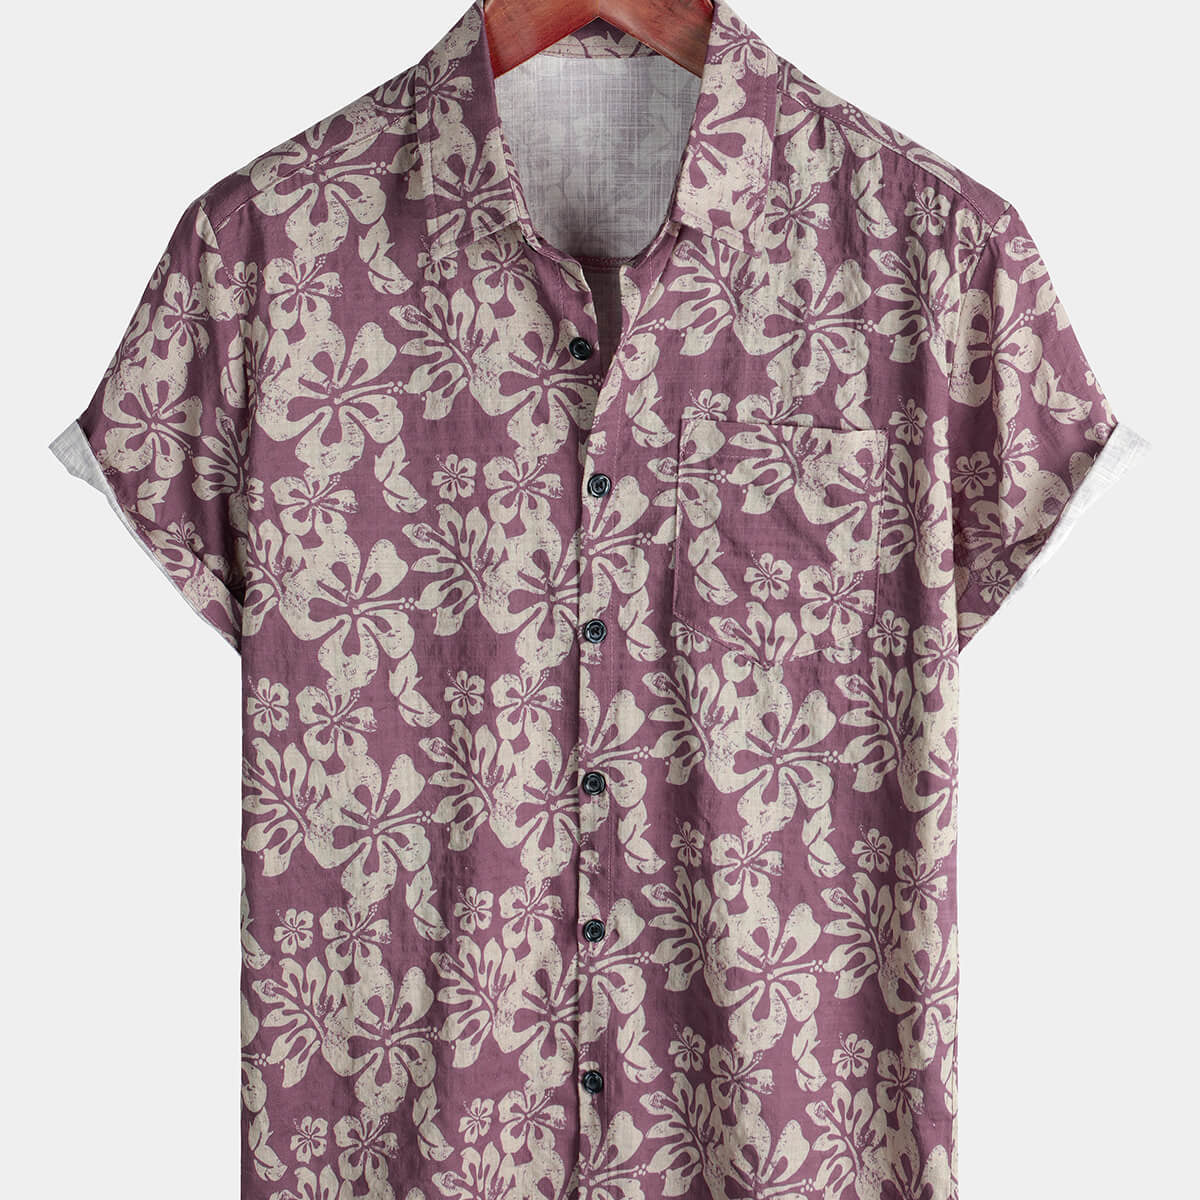 Men's Hawaiian Purple Floral Short Sleeve Button Up Beach Shirt